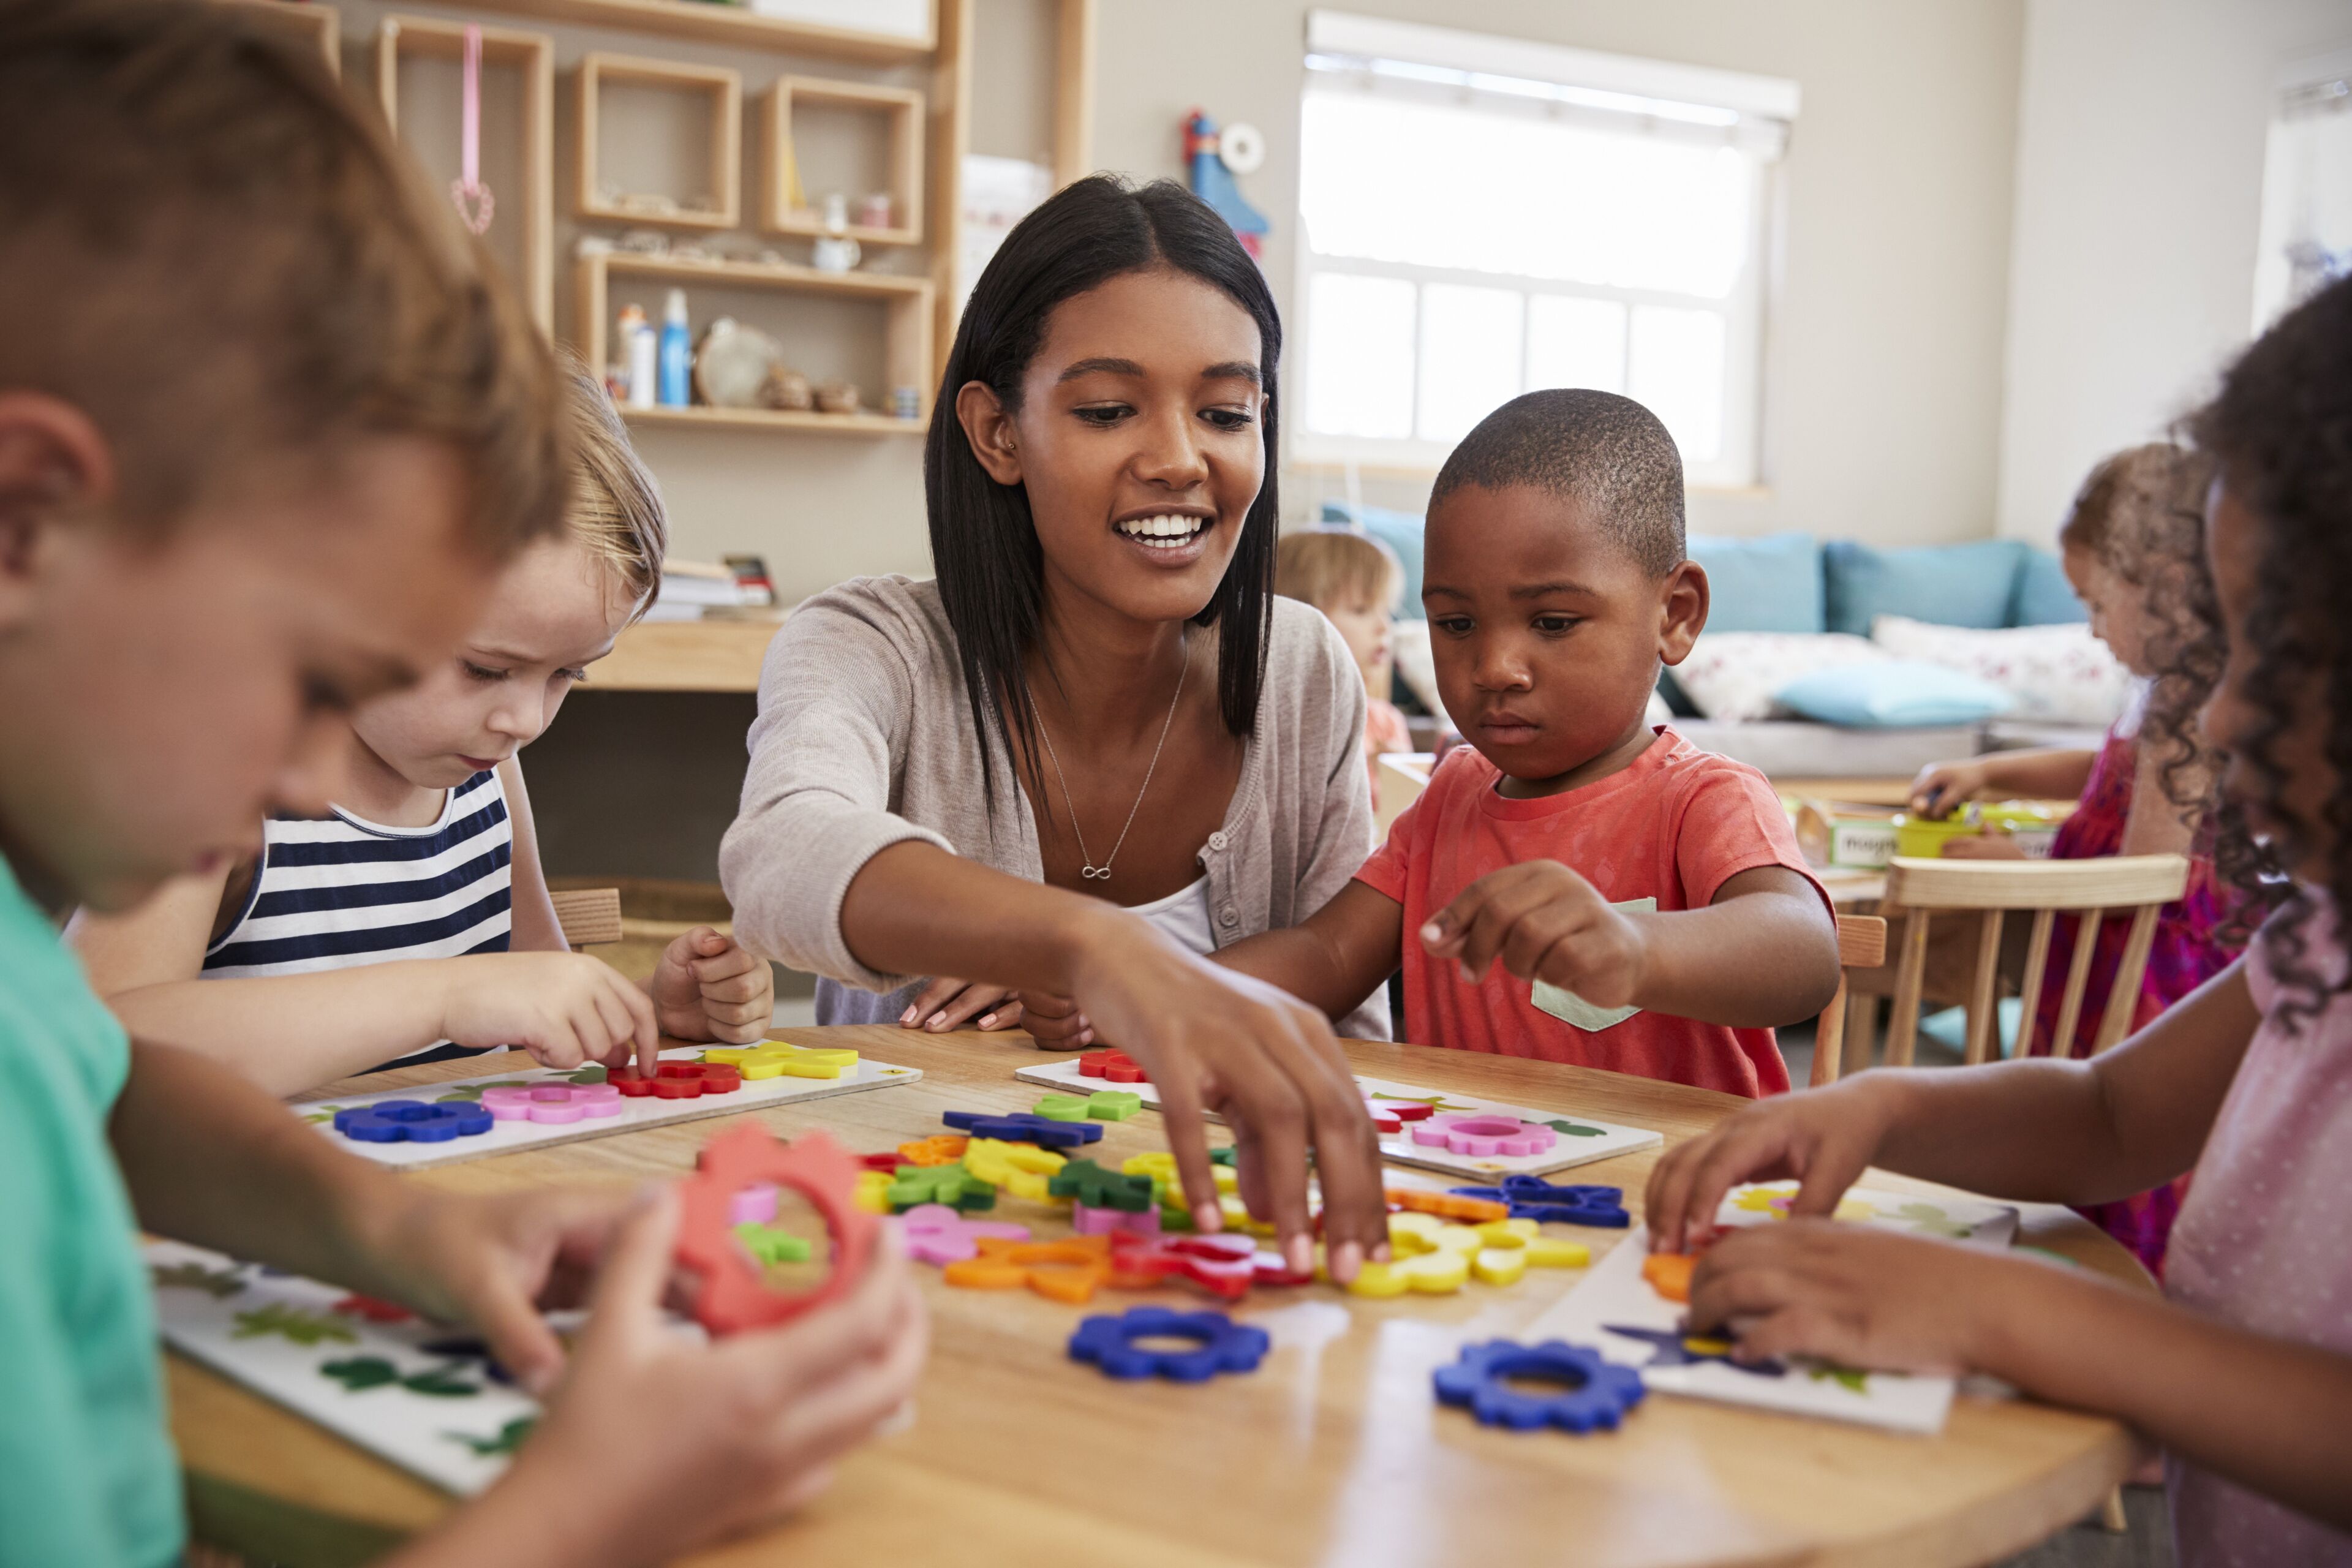 Una maestra se involucra con niños pequeños en una mesa, guiándolos en una lección lúdica sobre formas y colores usando juguetes educativos.